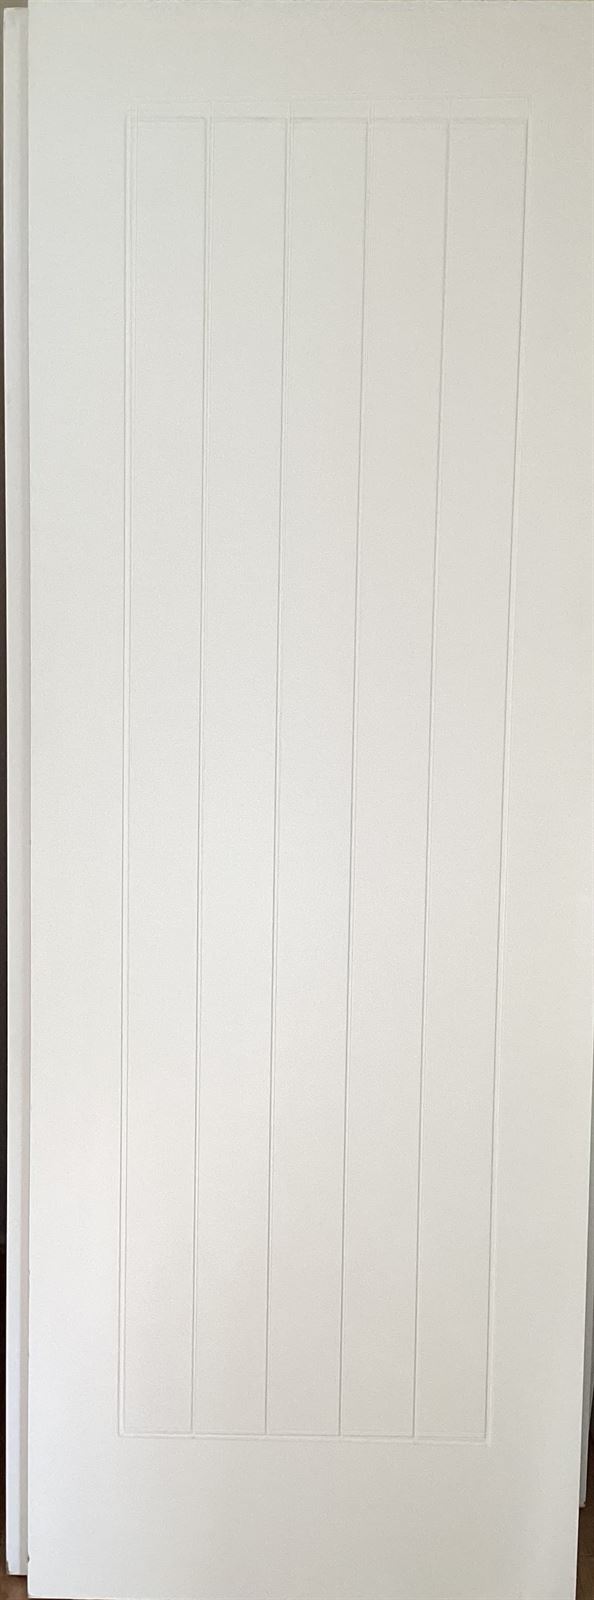 Puerta lacada blanca modelo 5 - Imagen 1